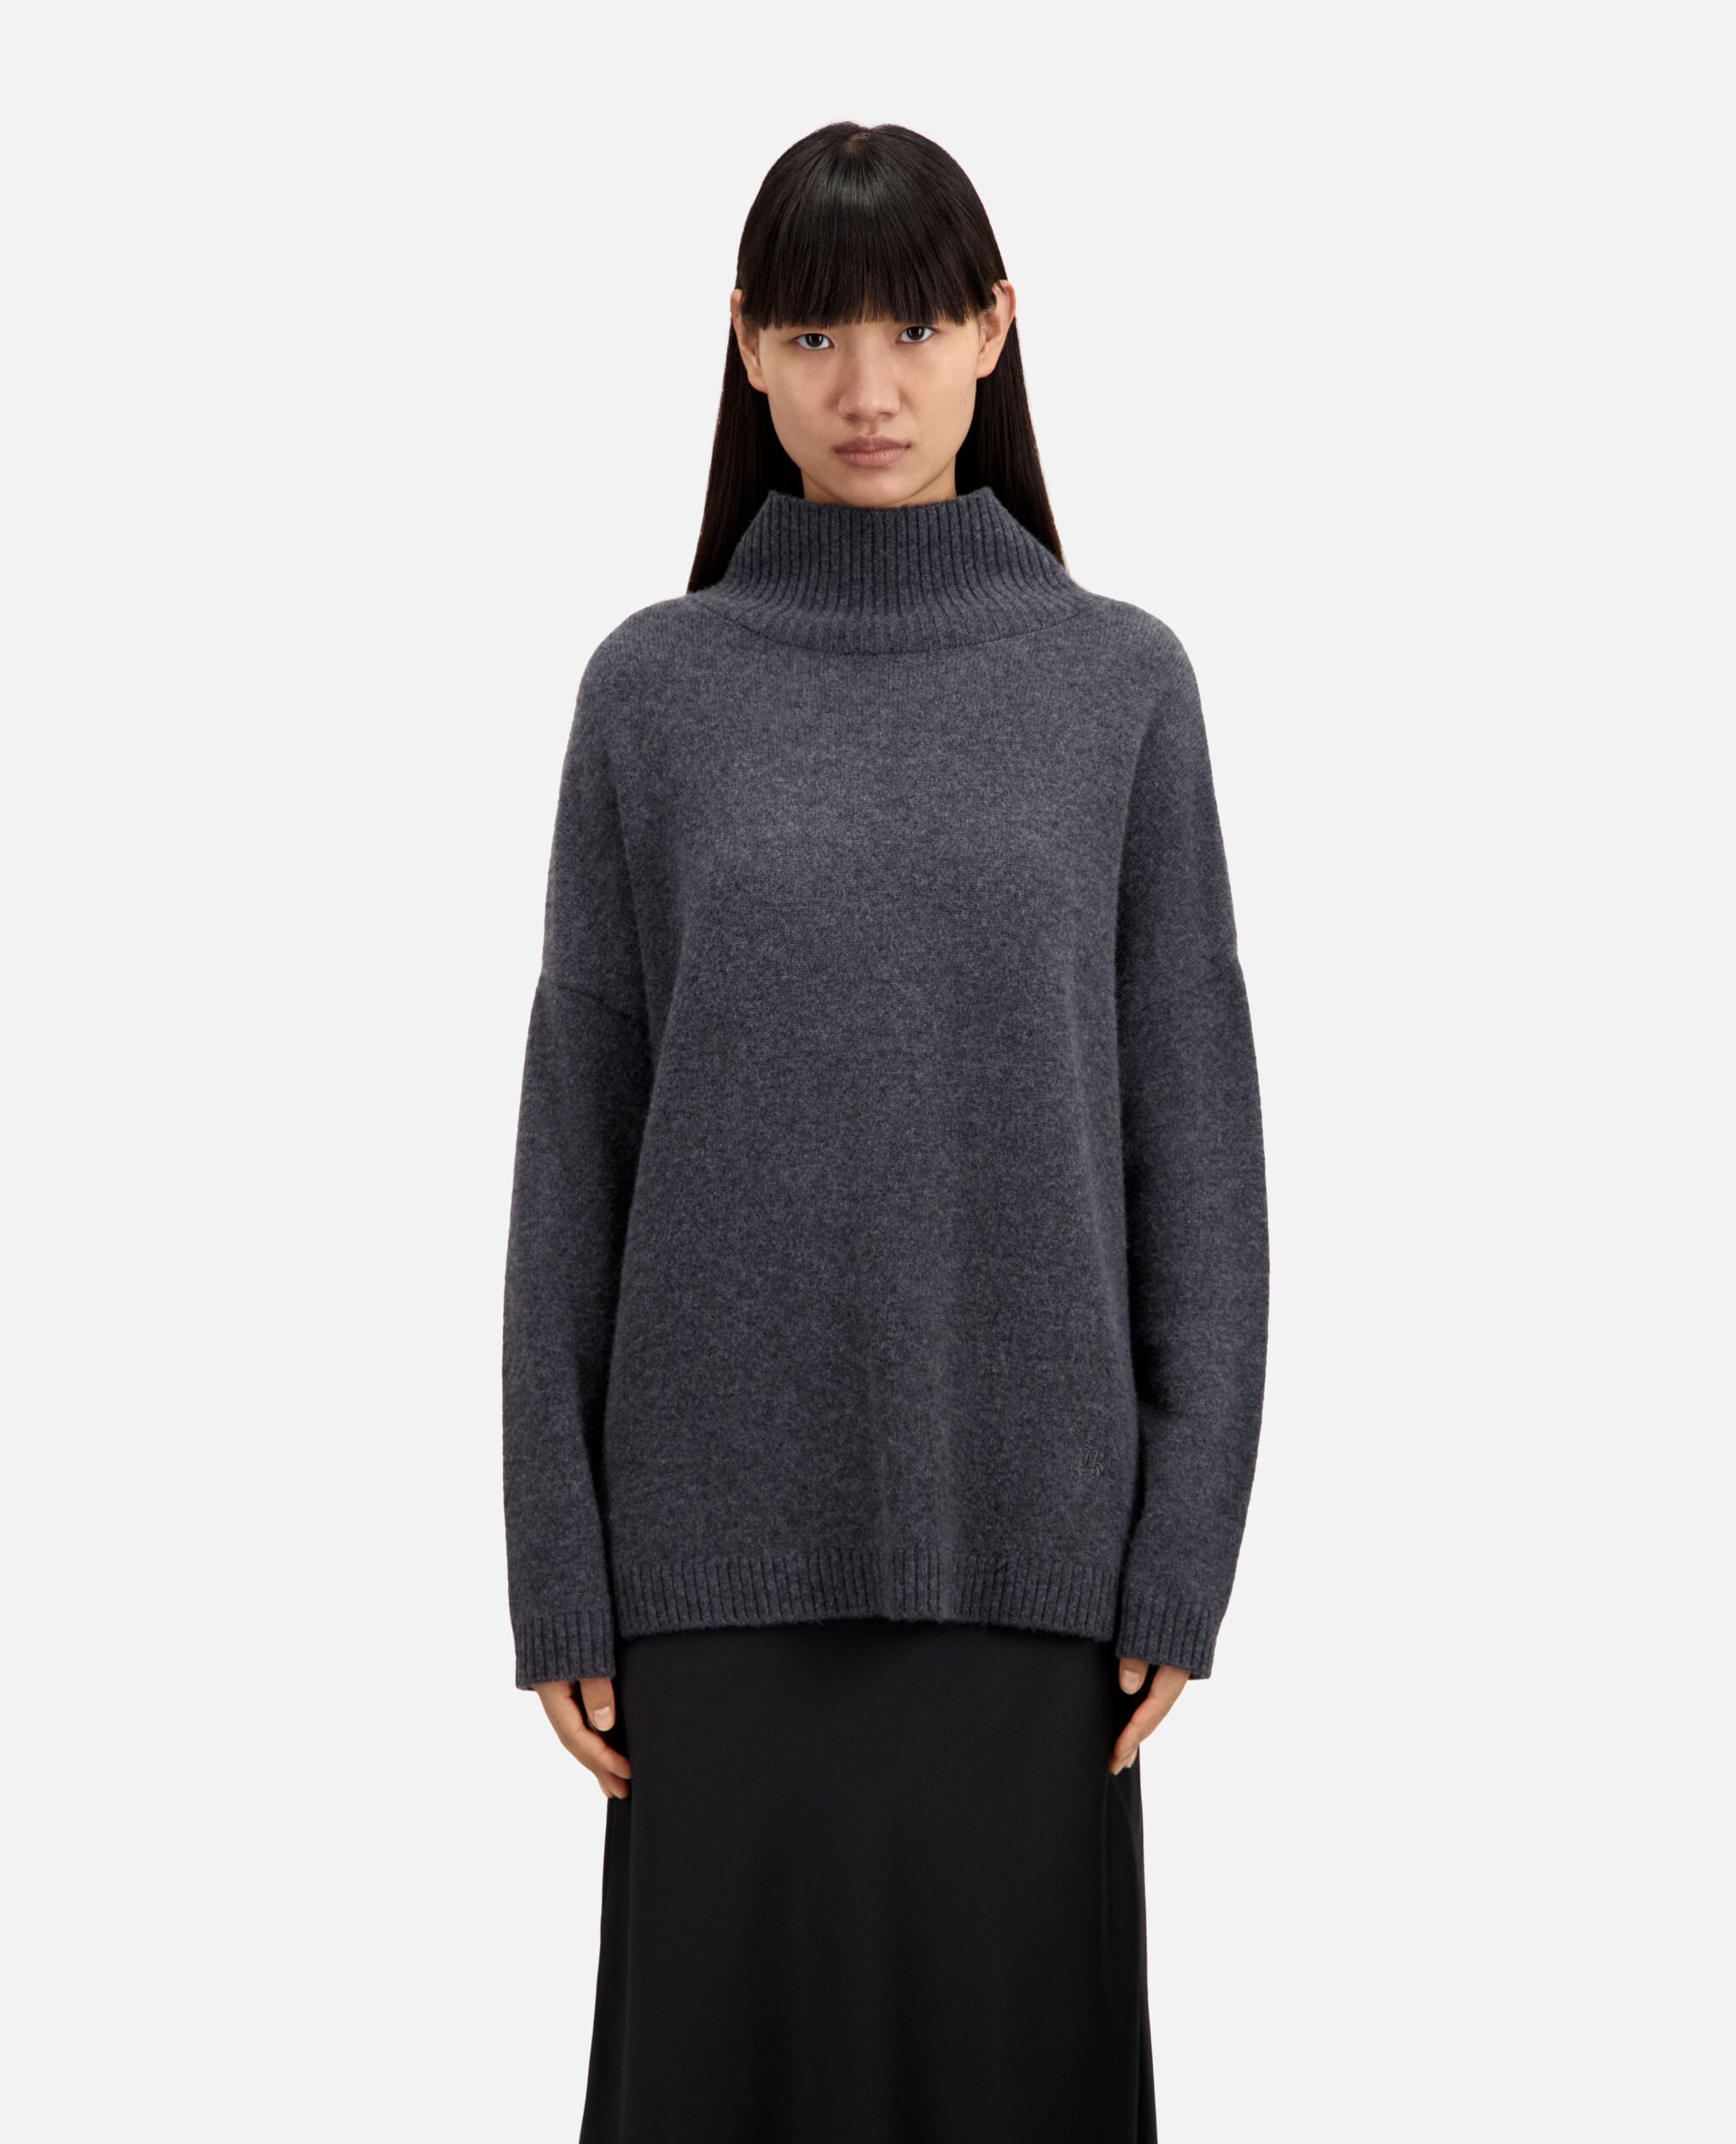 Grey cashmere-blend sweater, ANTHRACITE MELANGE, hi-res image number null